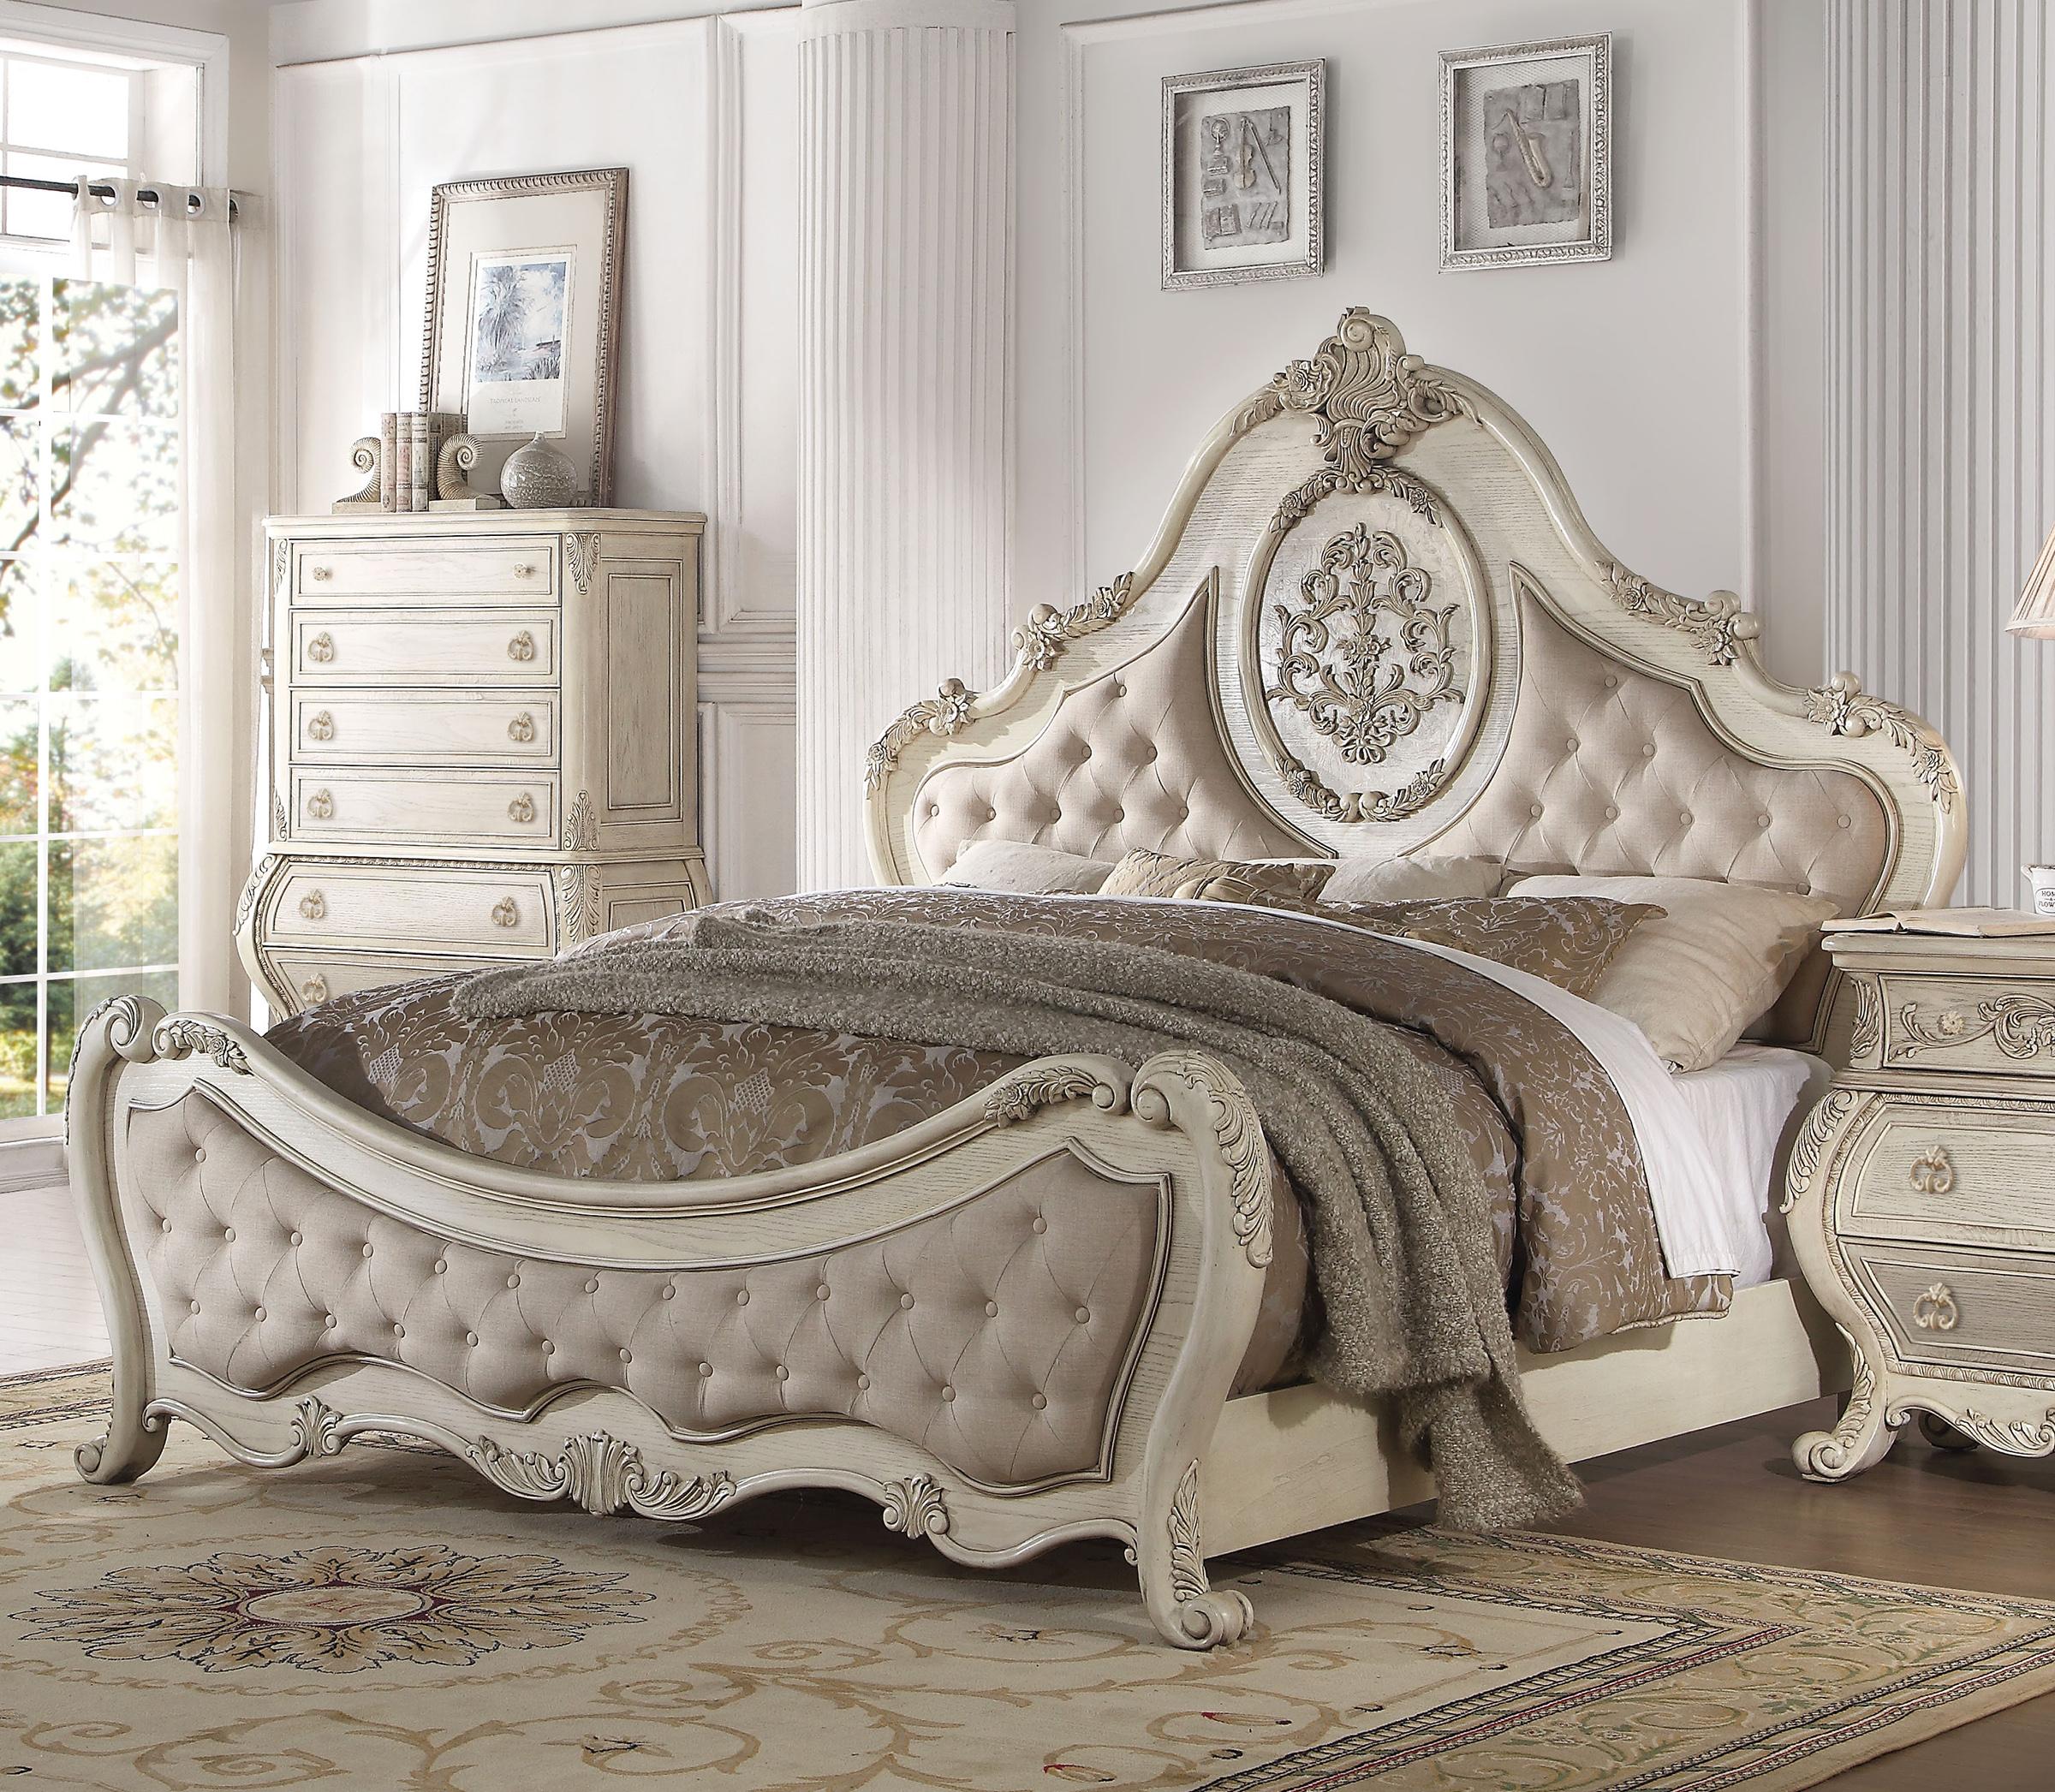 

    
Luxury Beige Linen/Antique White Queen Bed set 6pcs Ragenardus 27010Q Acme
